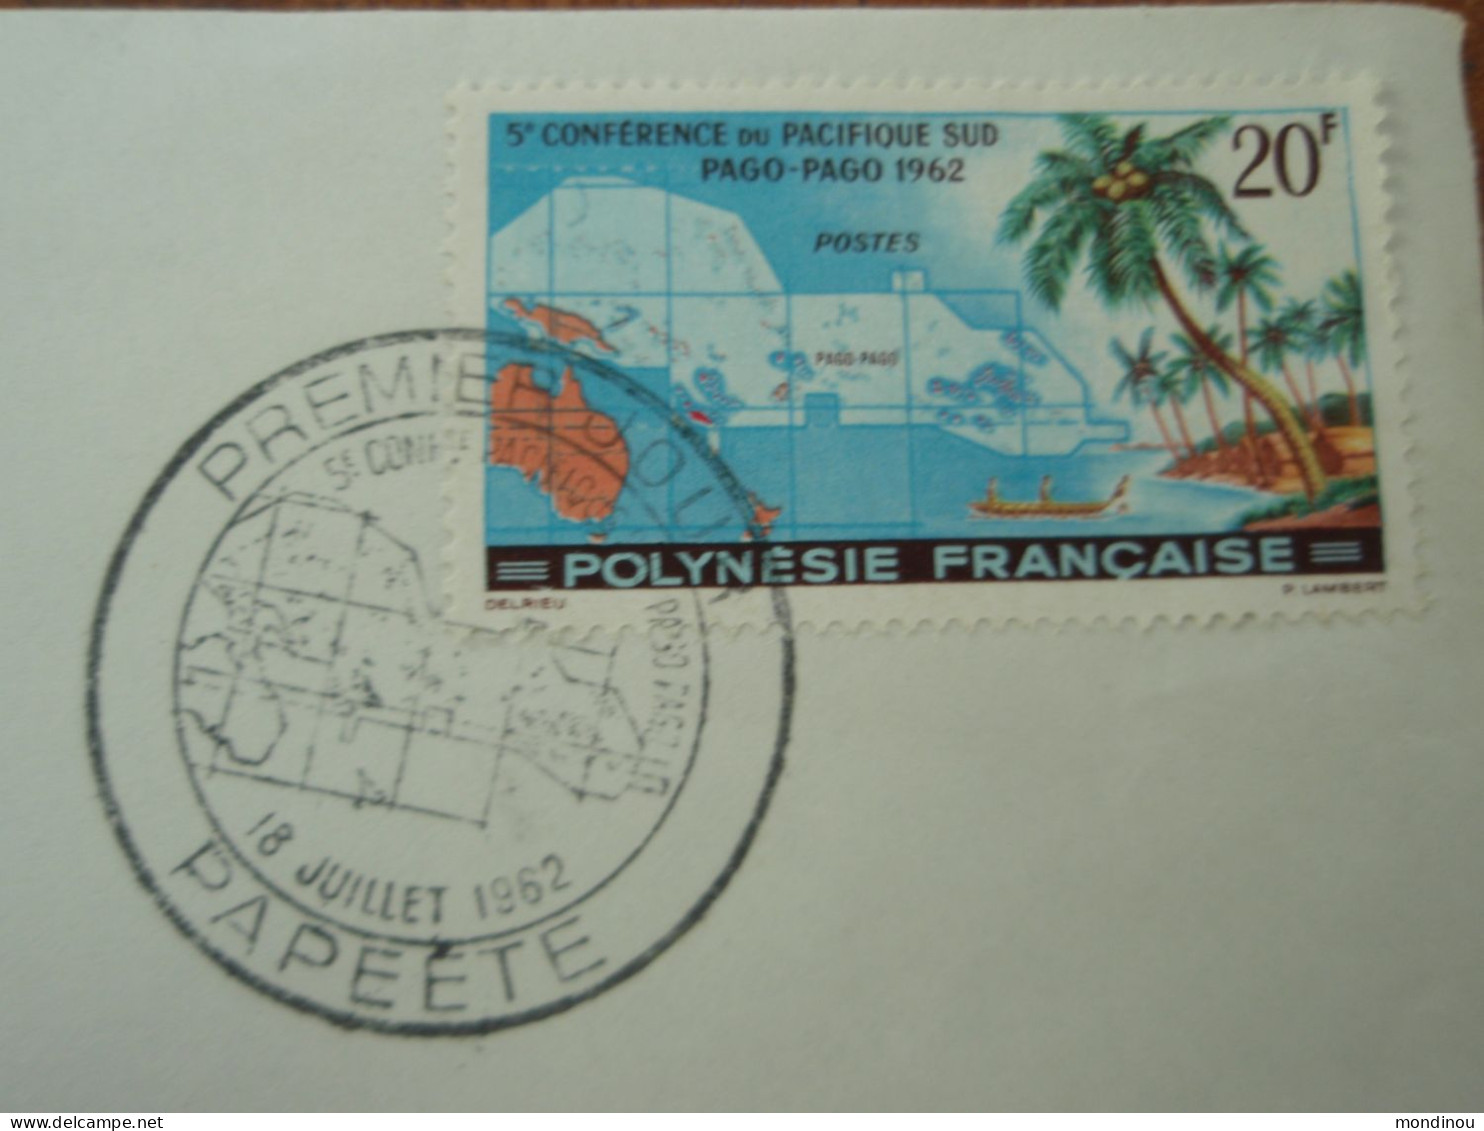 Timbre Polynésie Française - 5° Conférence Du Pacifique Sud PAGO-PAGO 1962 - Premier Jour PAPEETE - Usados